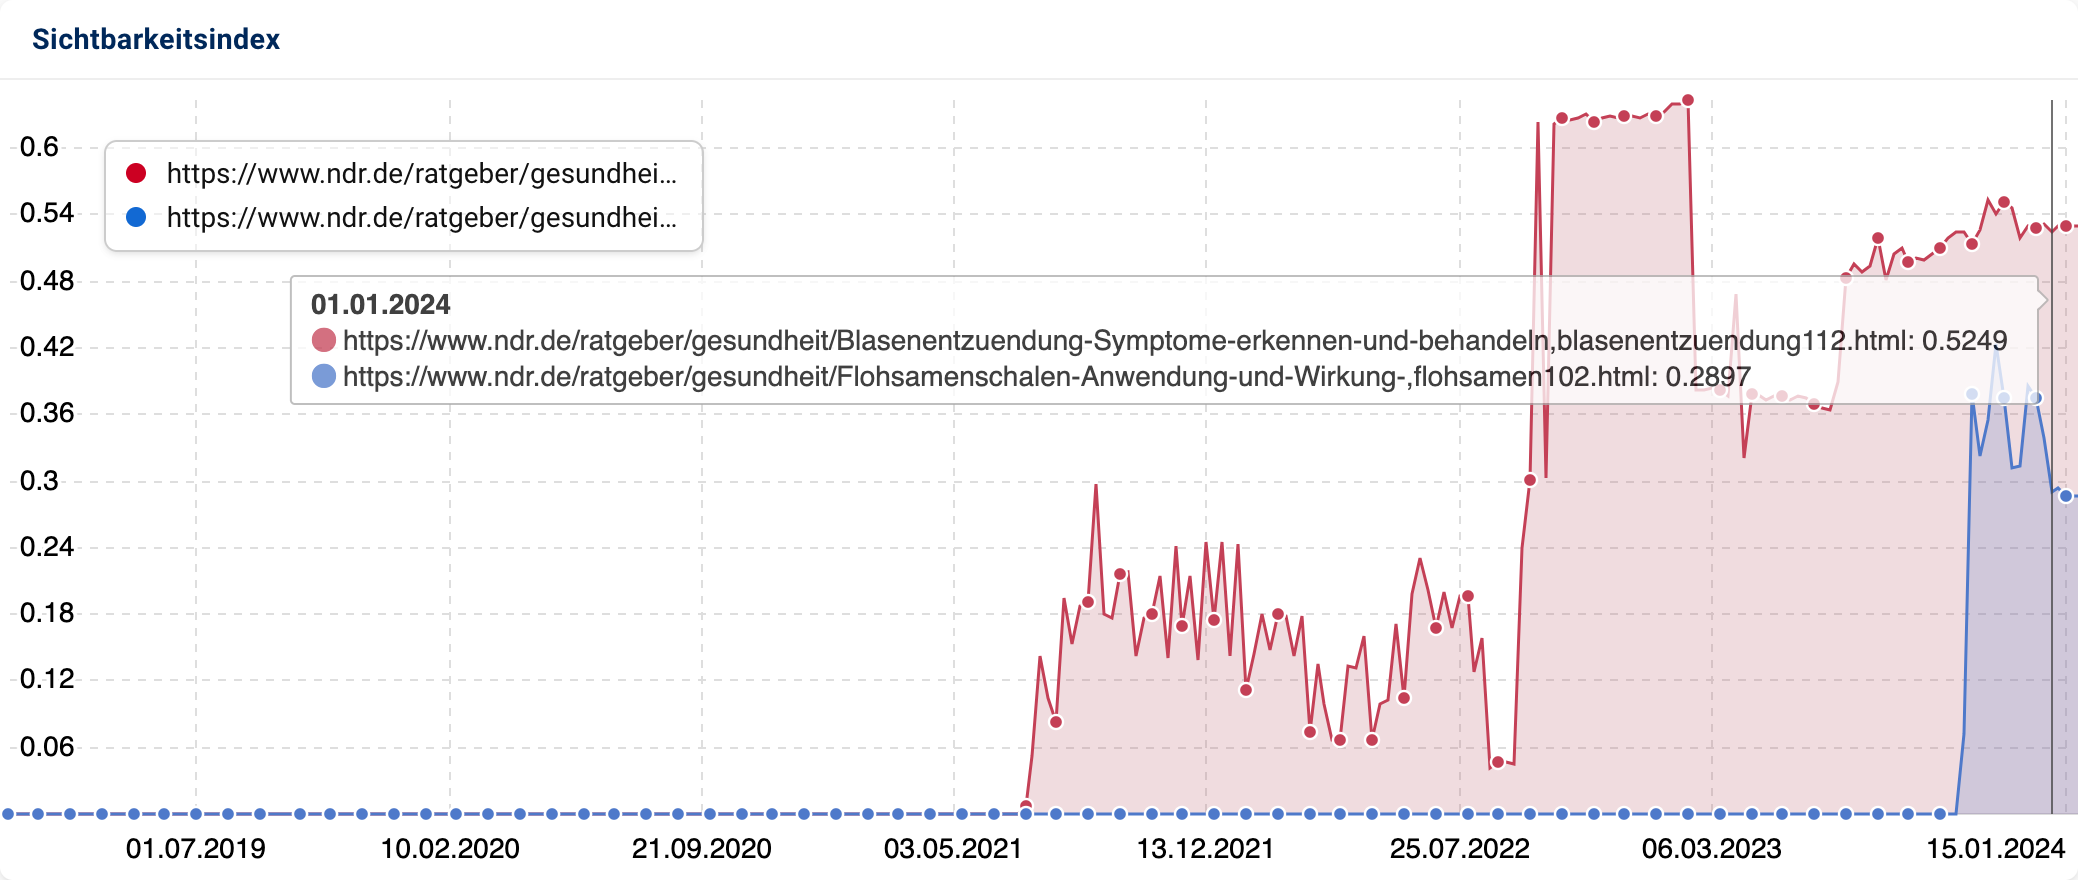 Der Vergleich des Sichtbarkeitsindex der Artikel über Flohsamenschalen und Blasenentzündungen auf ndr.de.